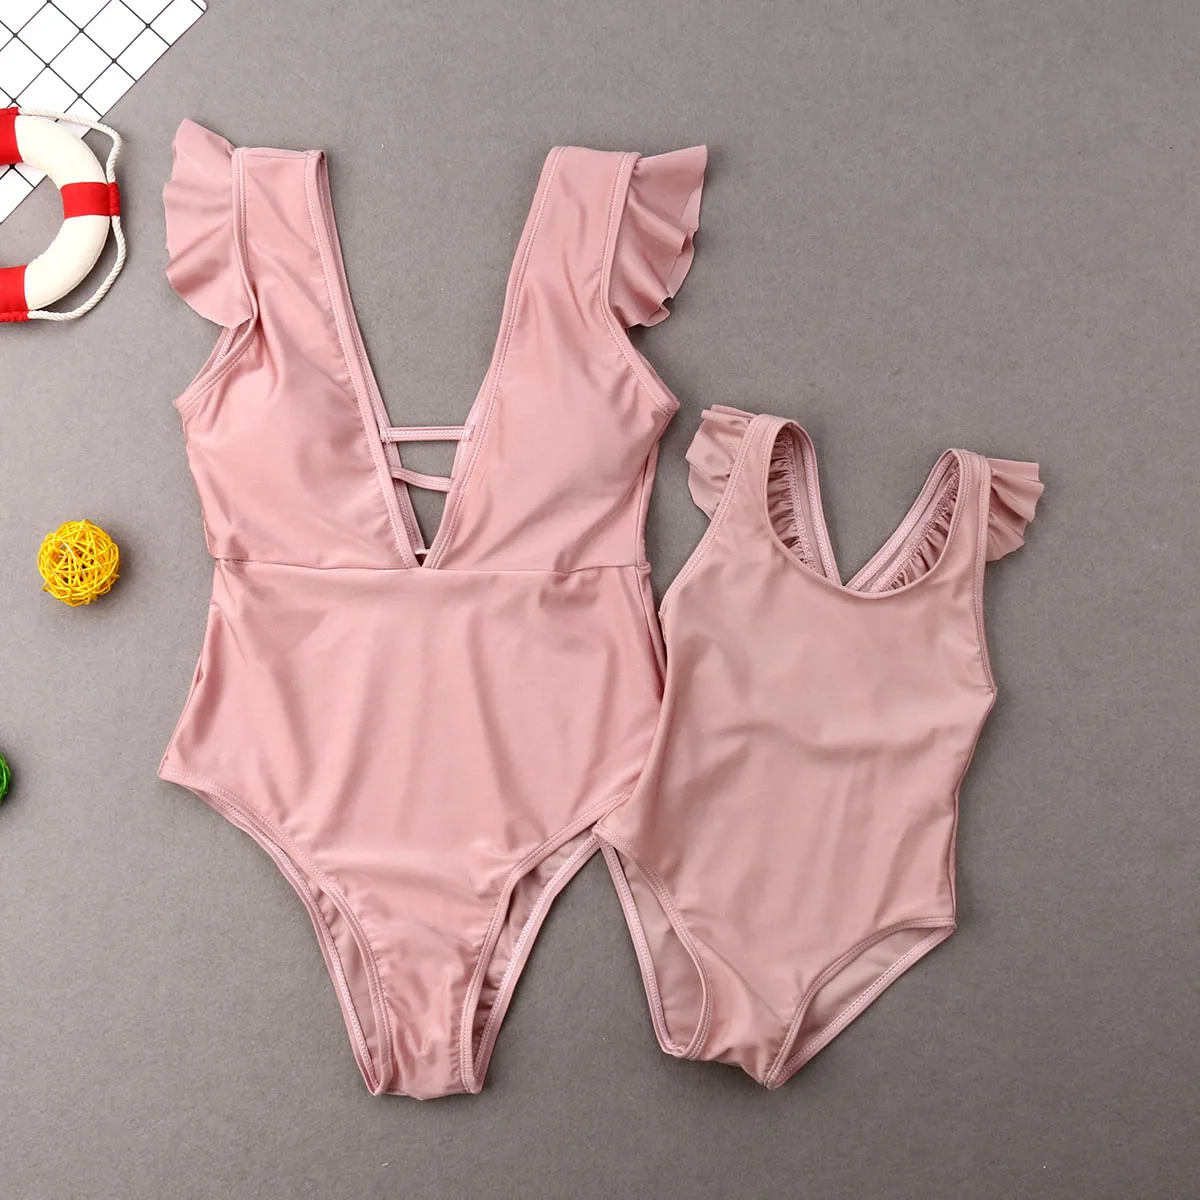 ITFABS/Одинаковая одежда комплект бикини для мамы и дочки; коллекция года; семейный летний купальник; купальные костюмы - Цвет: Розовый